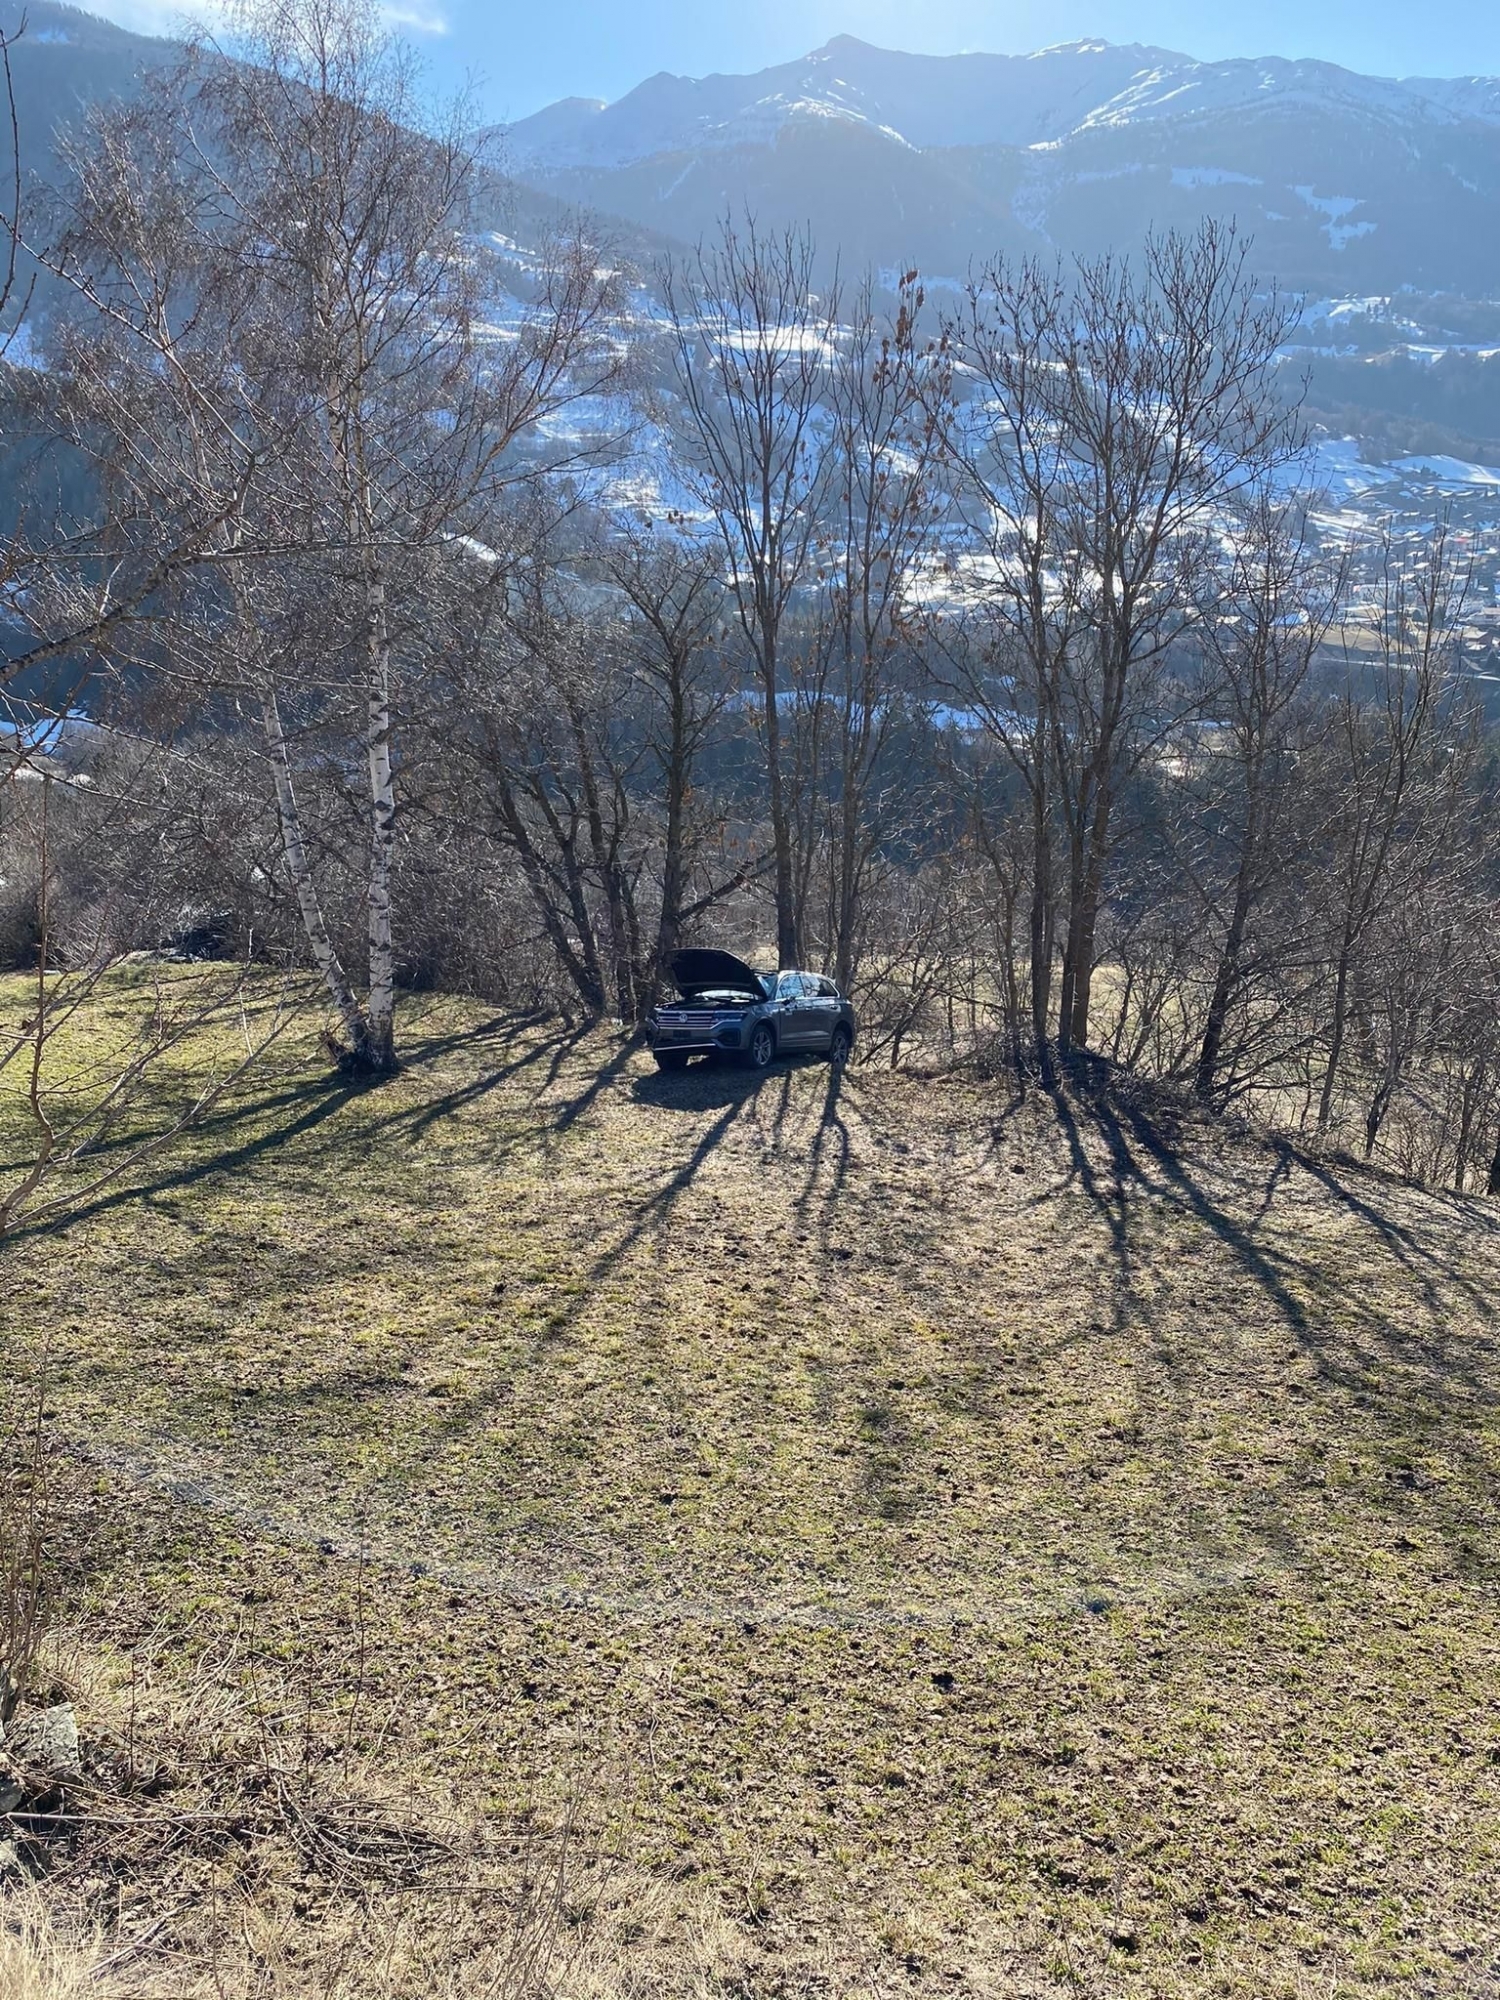 Le véhicule a terminé sa série de tonneaux contre un arbre.